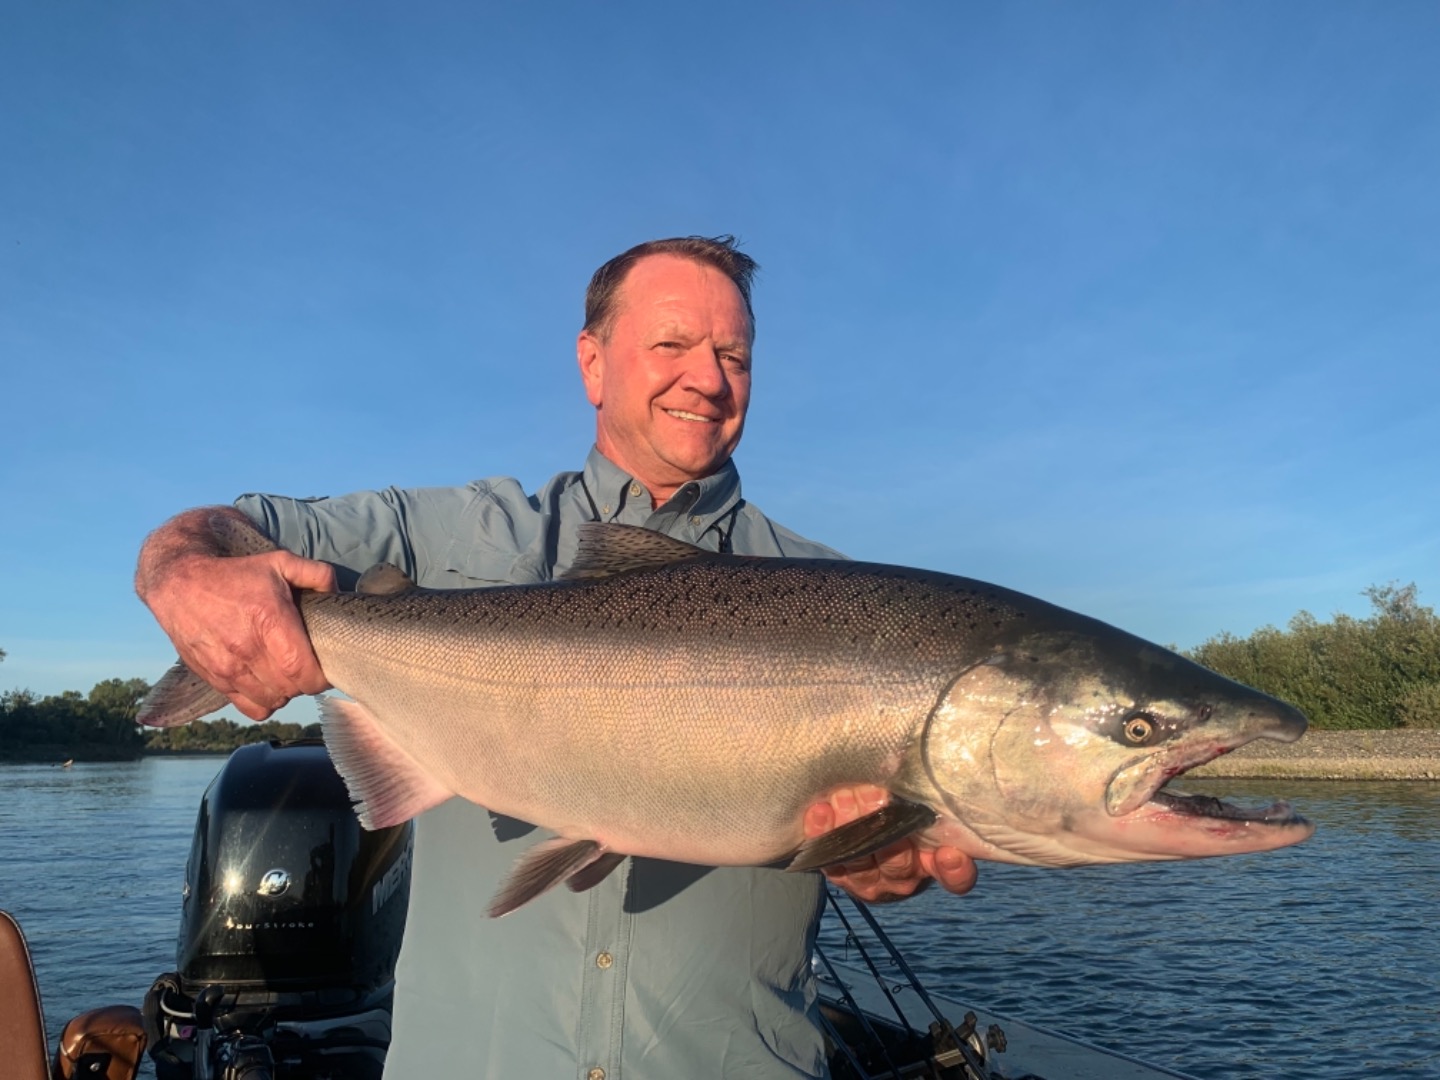 Big king salmon!!